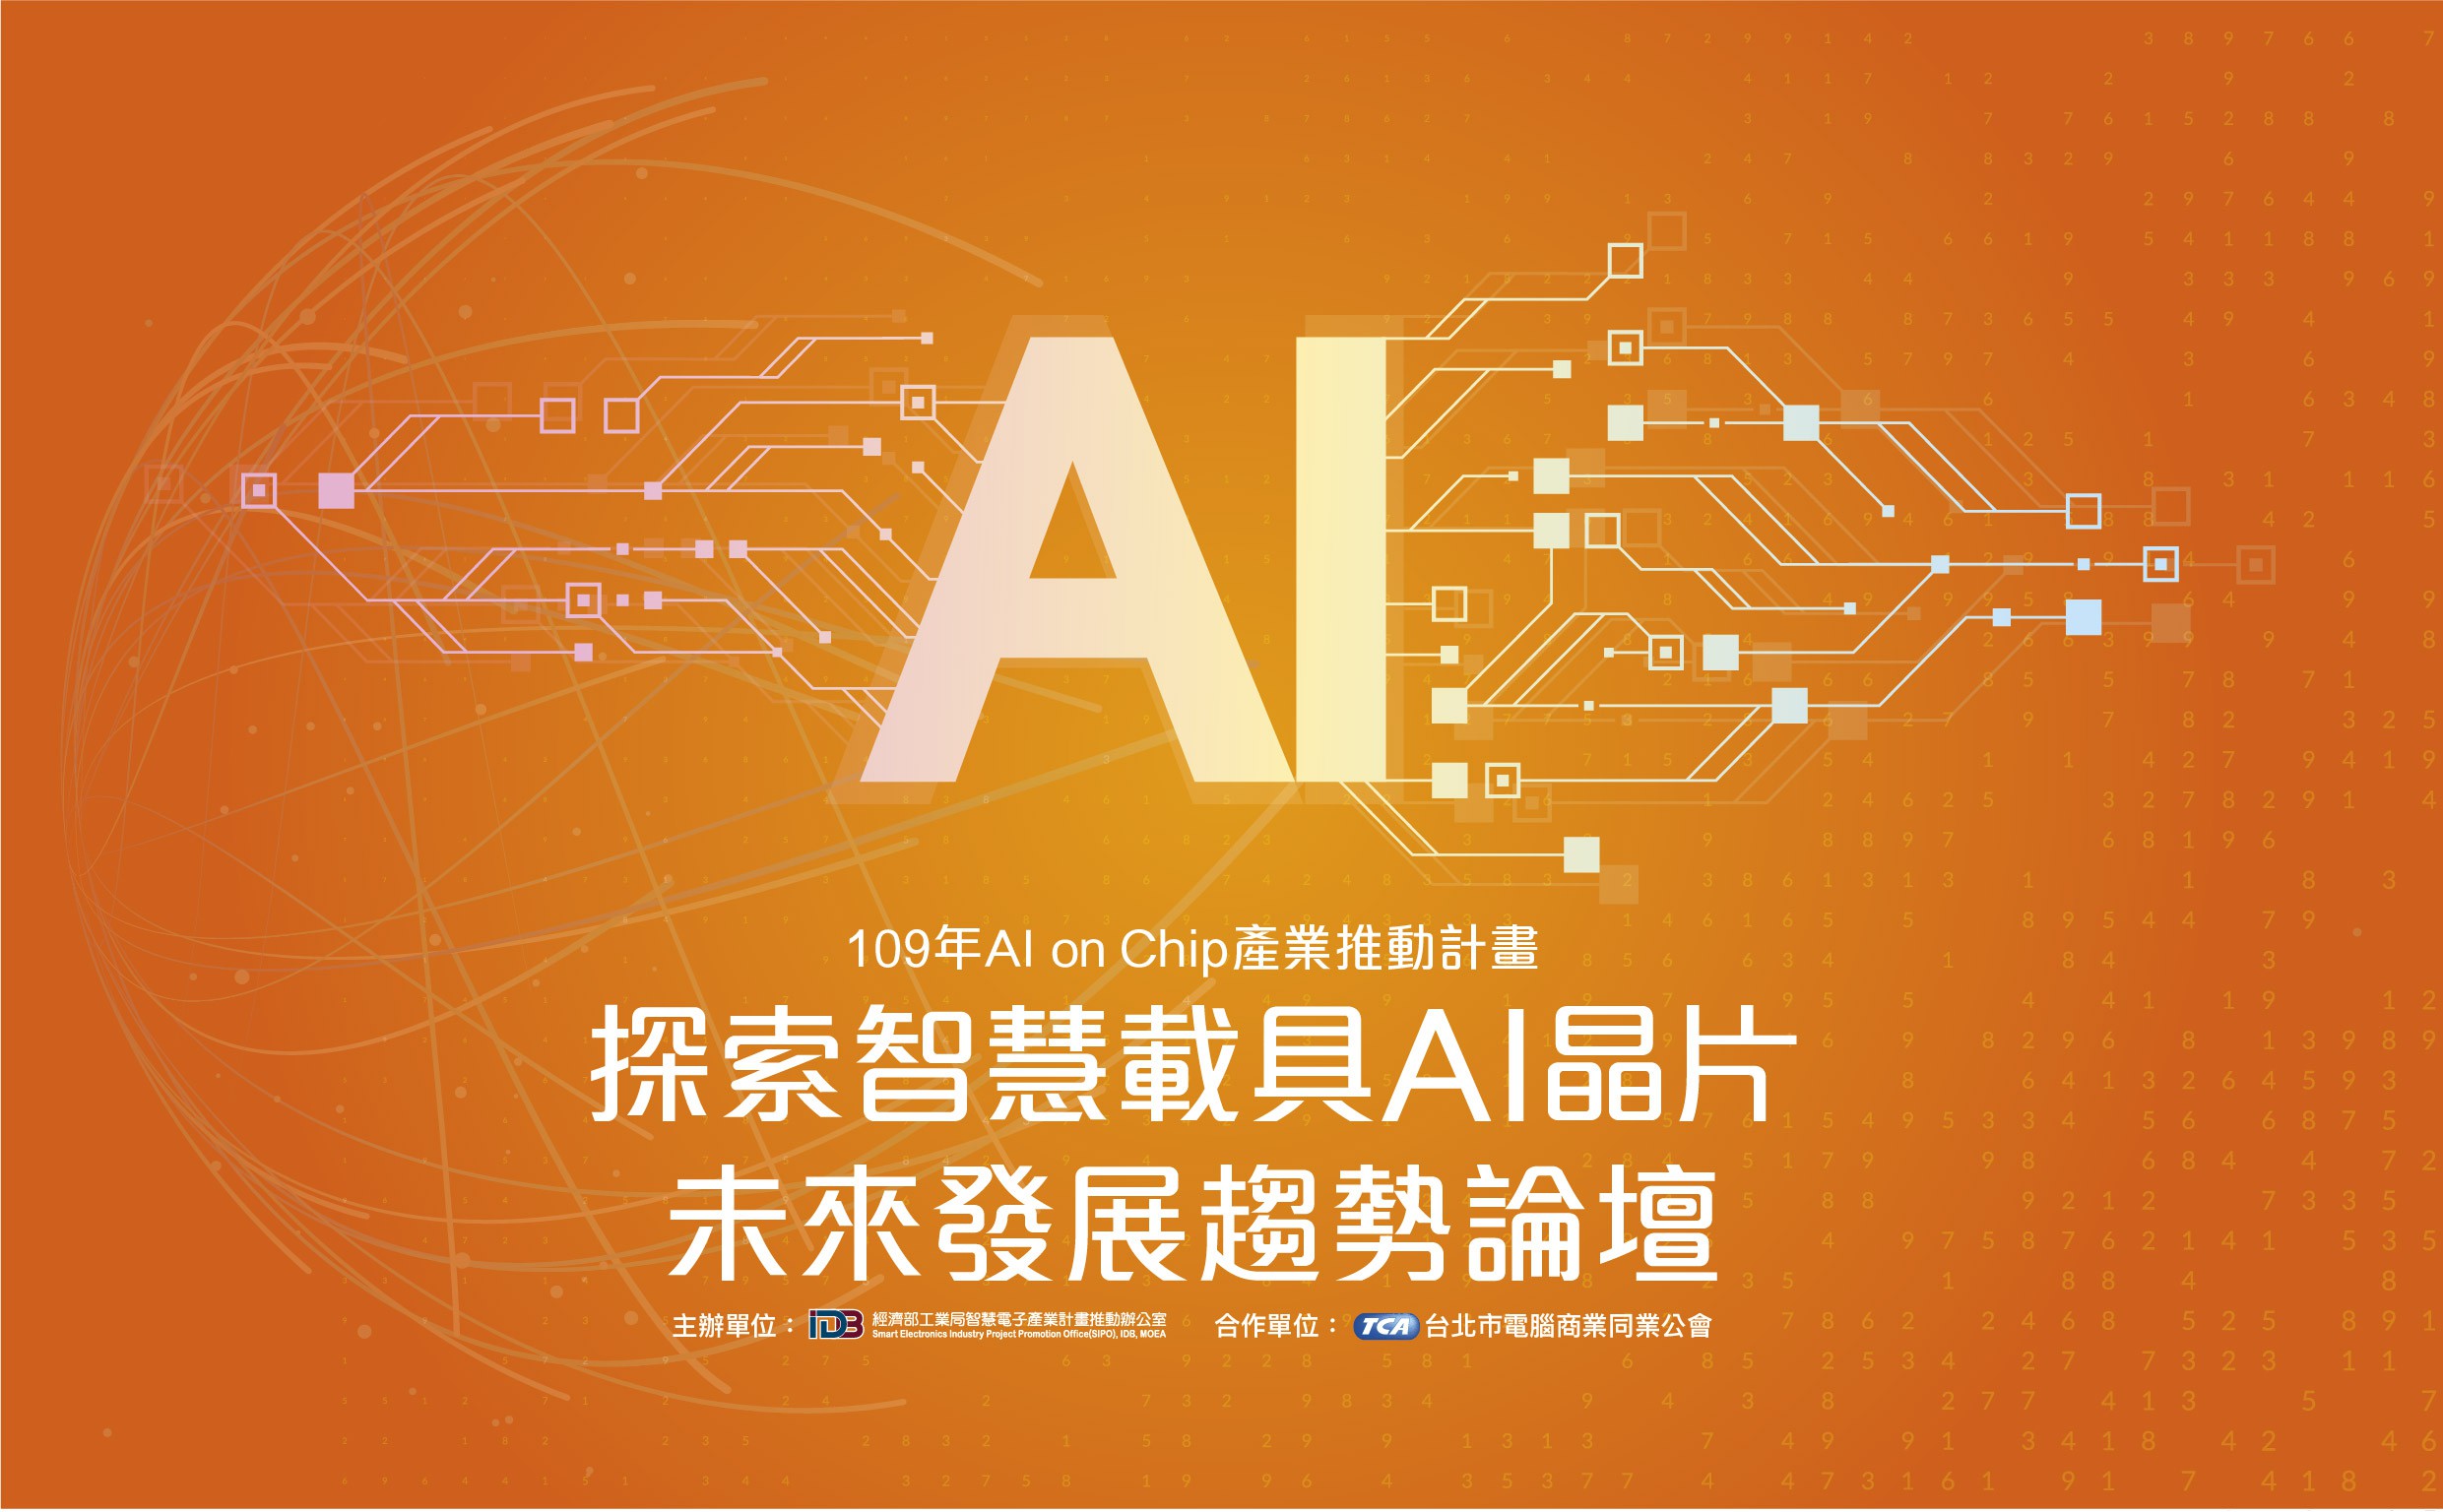 「探索智慧載具AI晶片未來發展趨勢」論壇